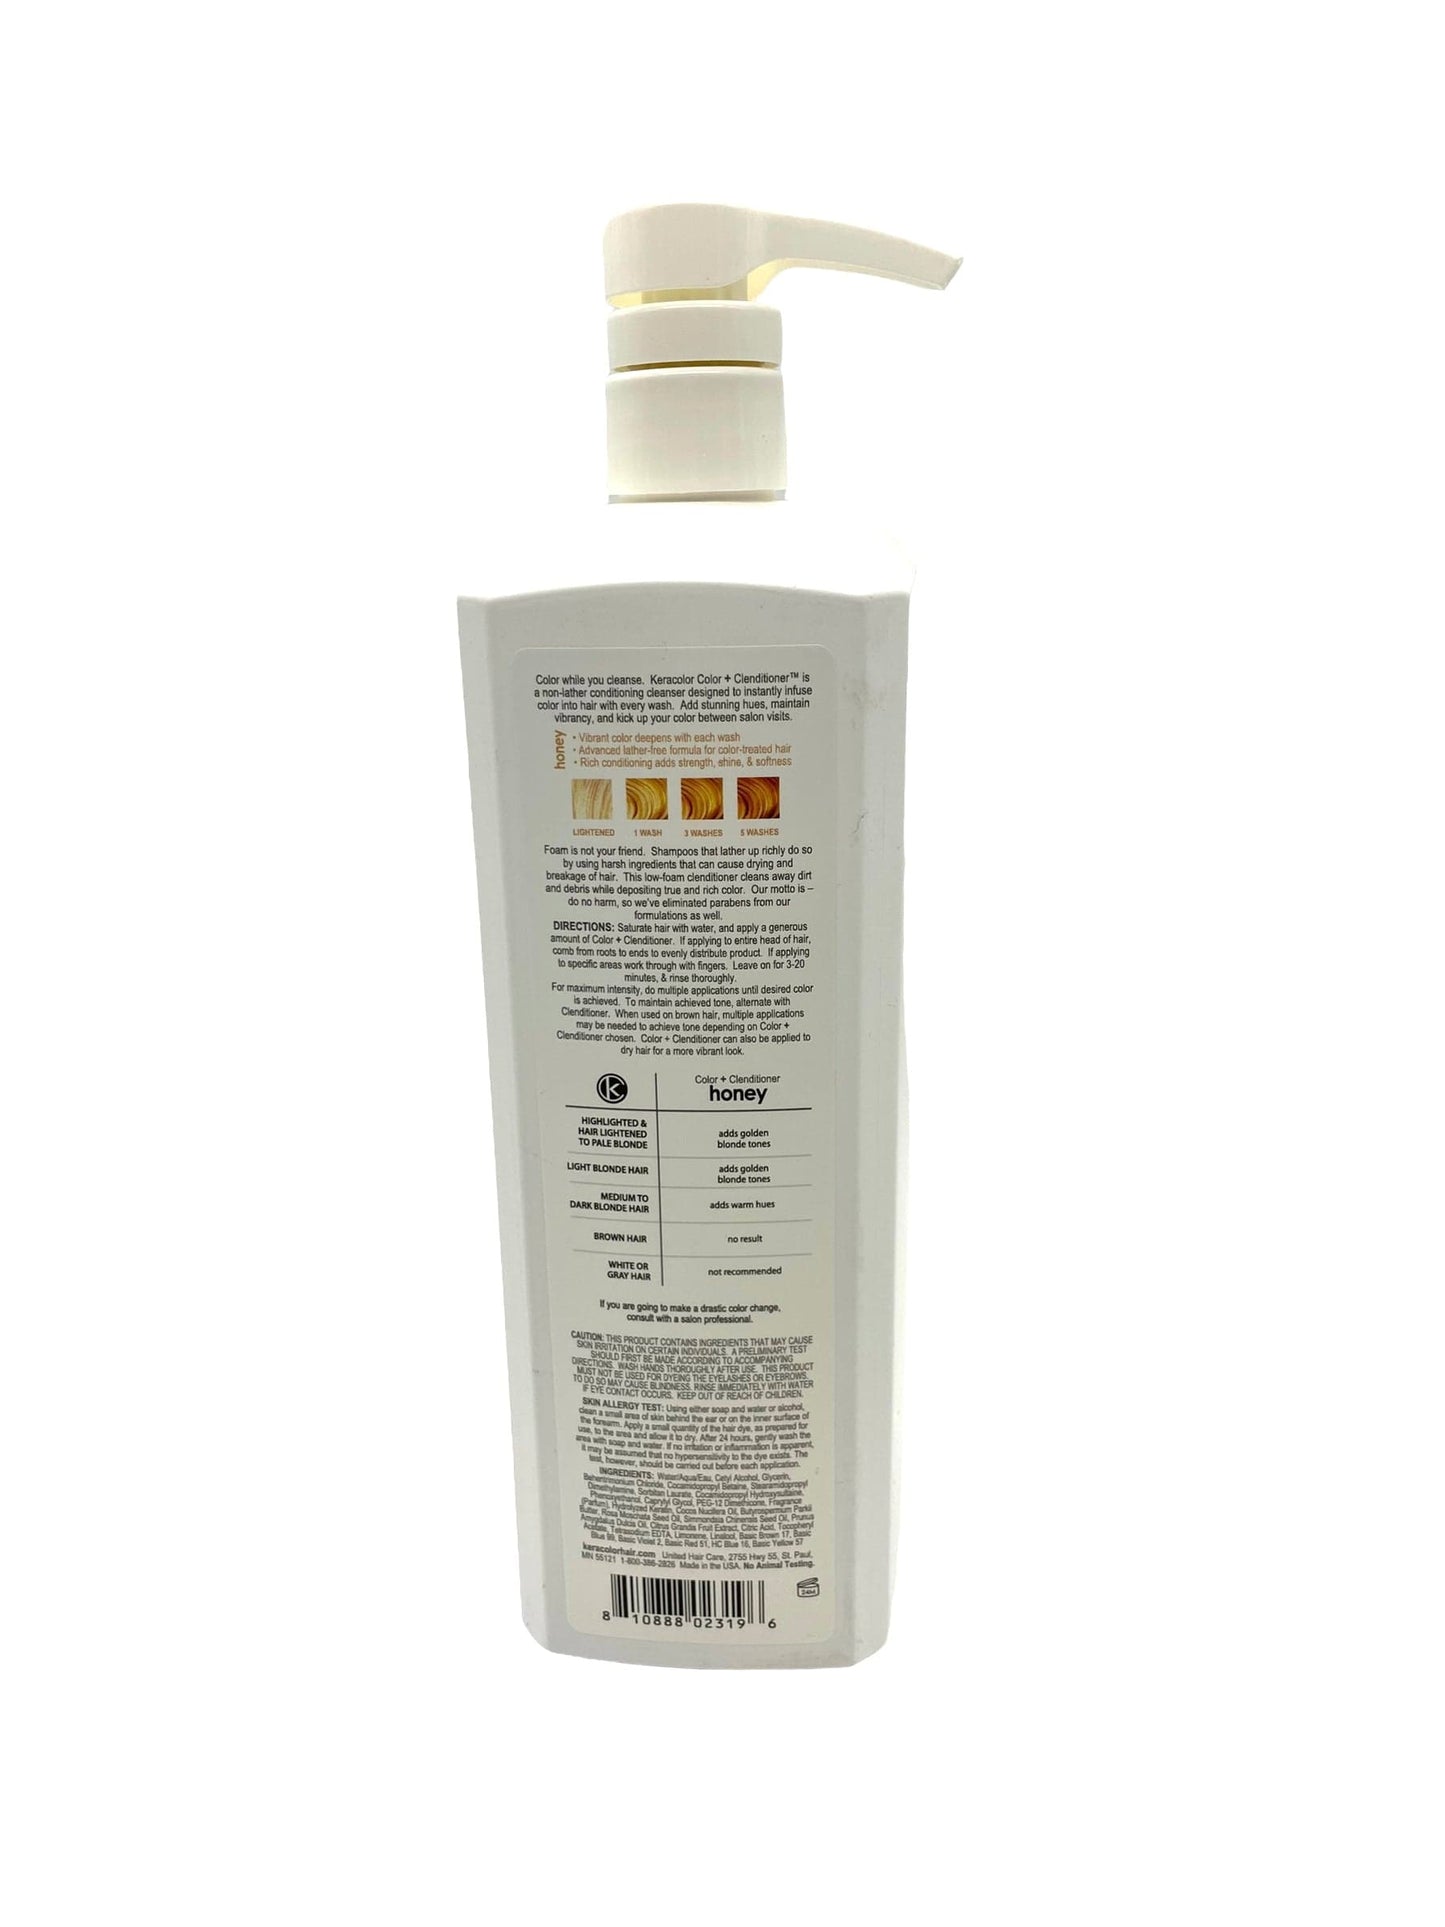 Keracolor Clenditioner Honey 33.8 oz Shampoo & Conditioner